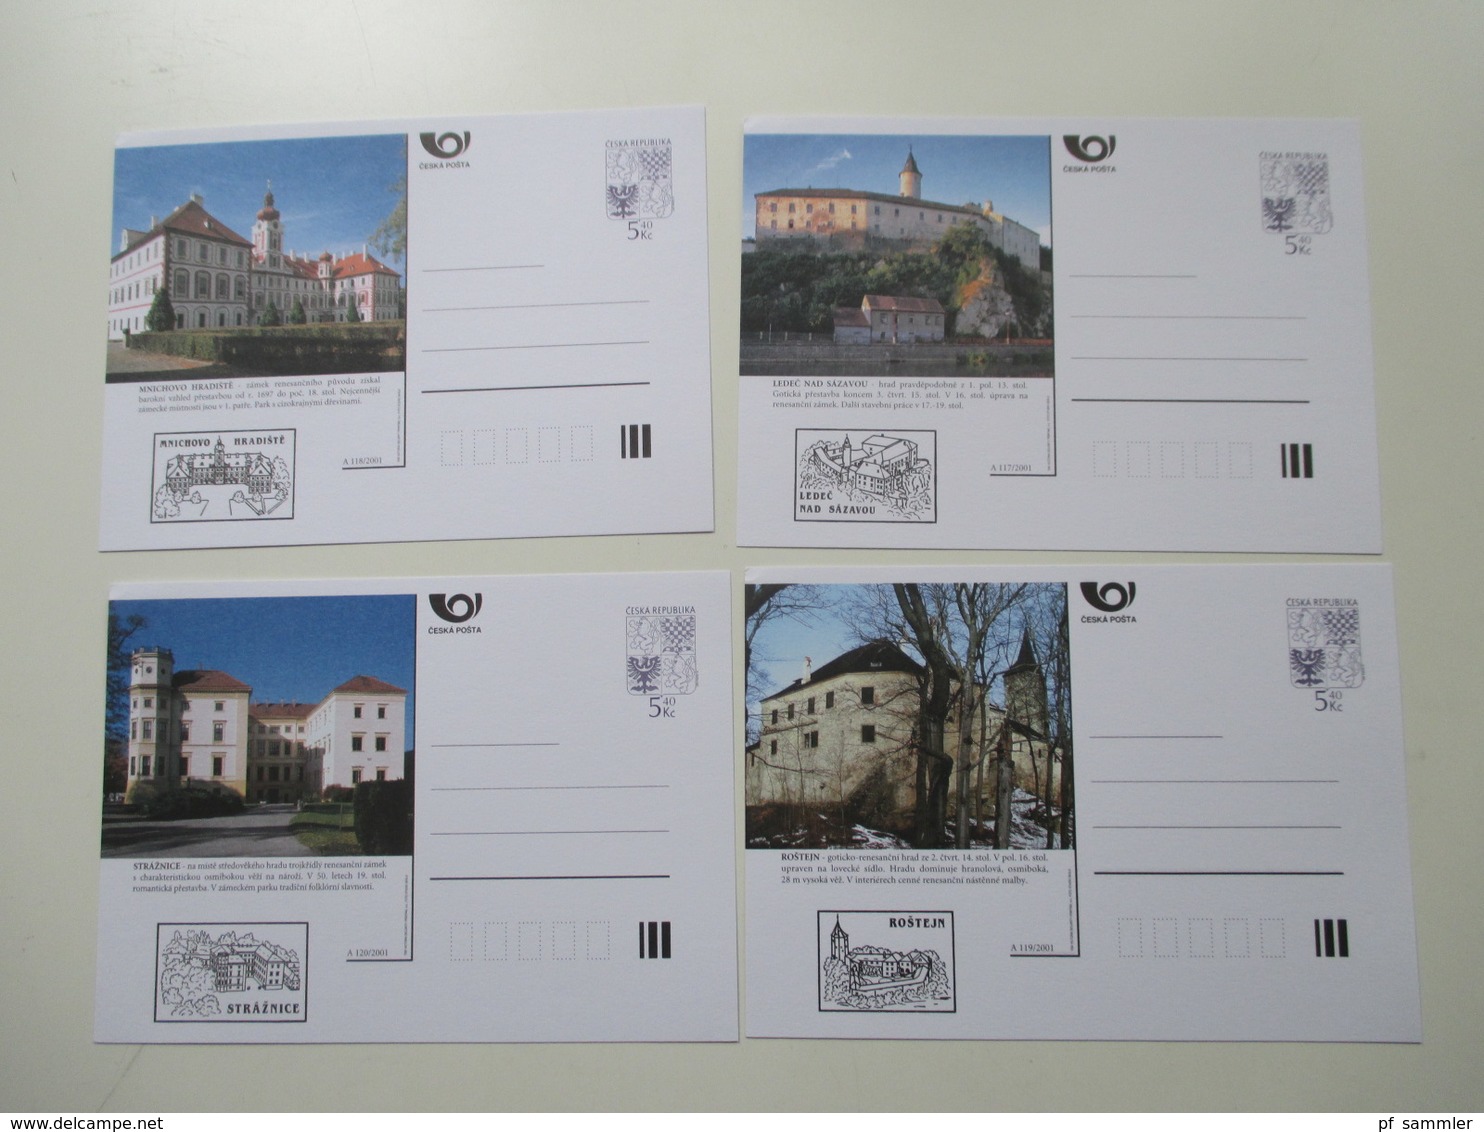 Tschechische Republik Posten GA Karten / BM Ausstellungen / Postfila 1990er Jahre - 2001 insgesamt 200 Stück ungebraucht